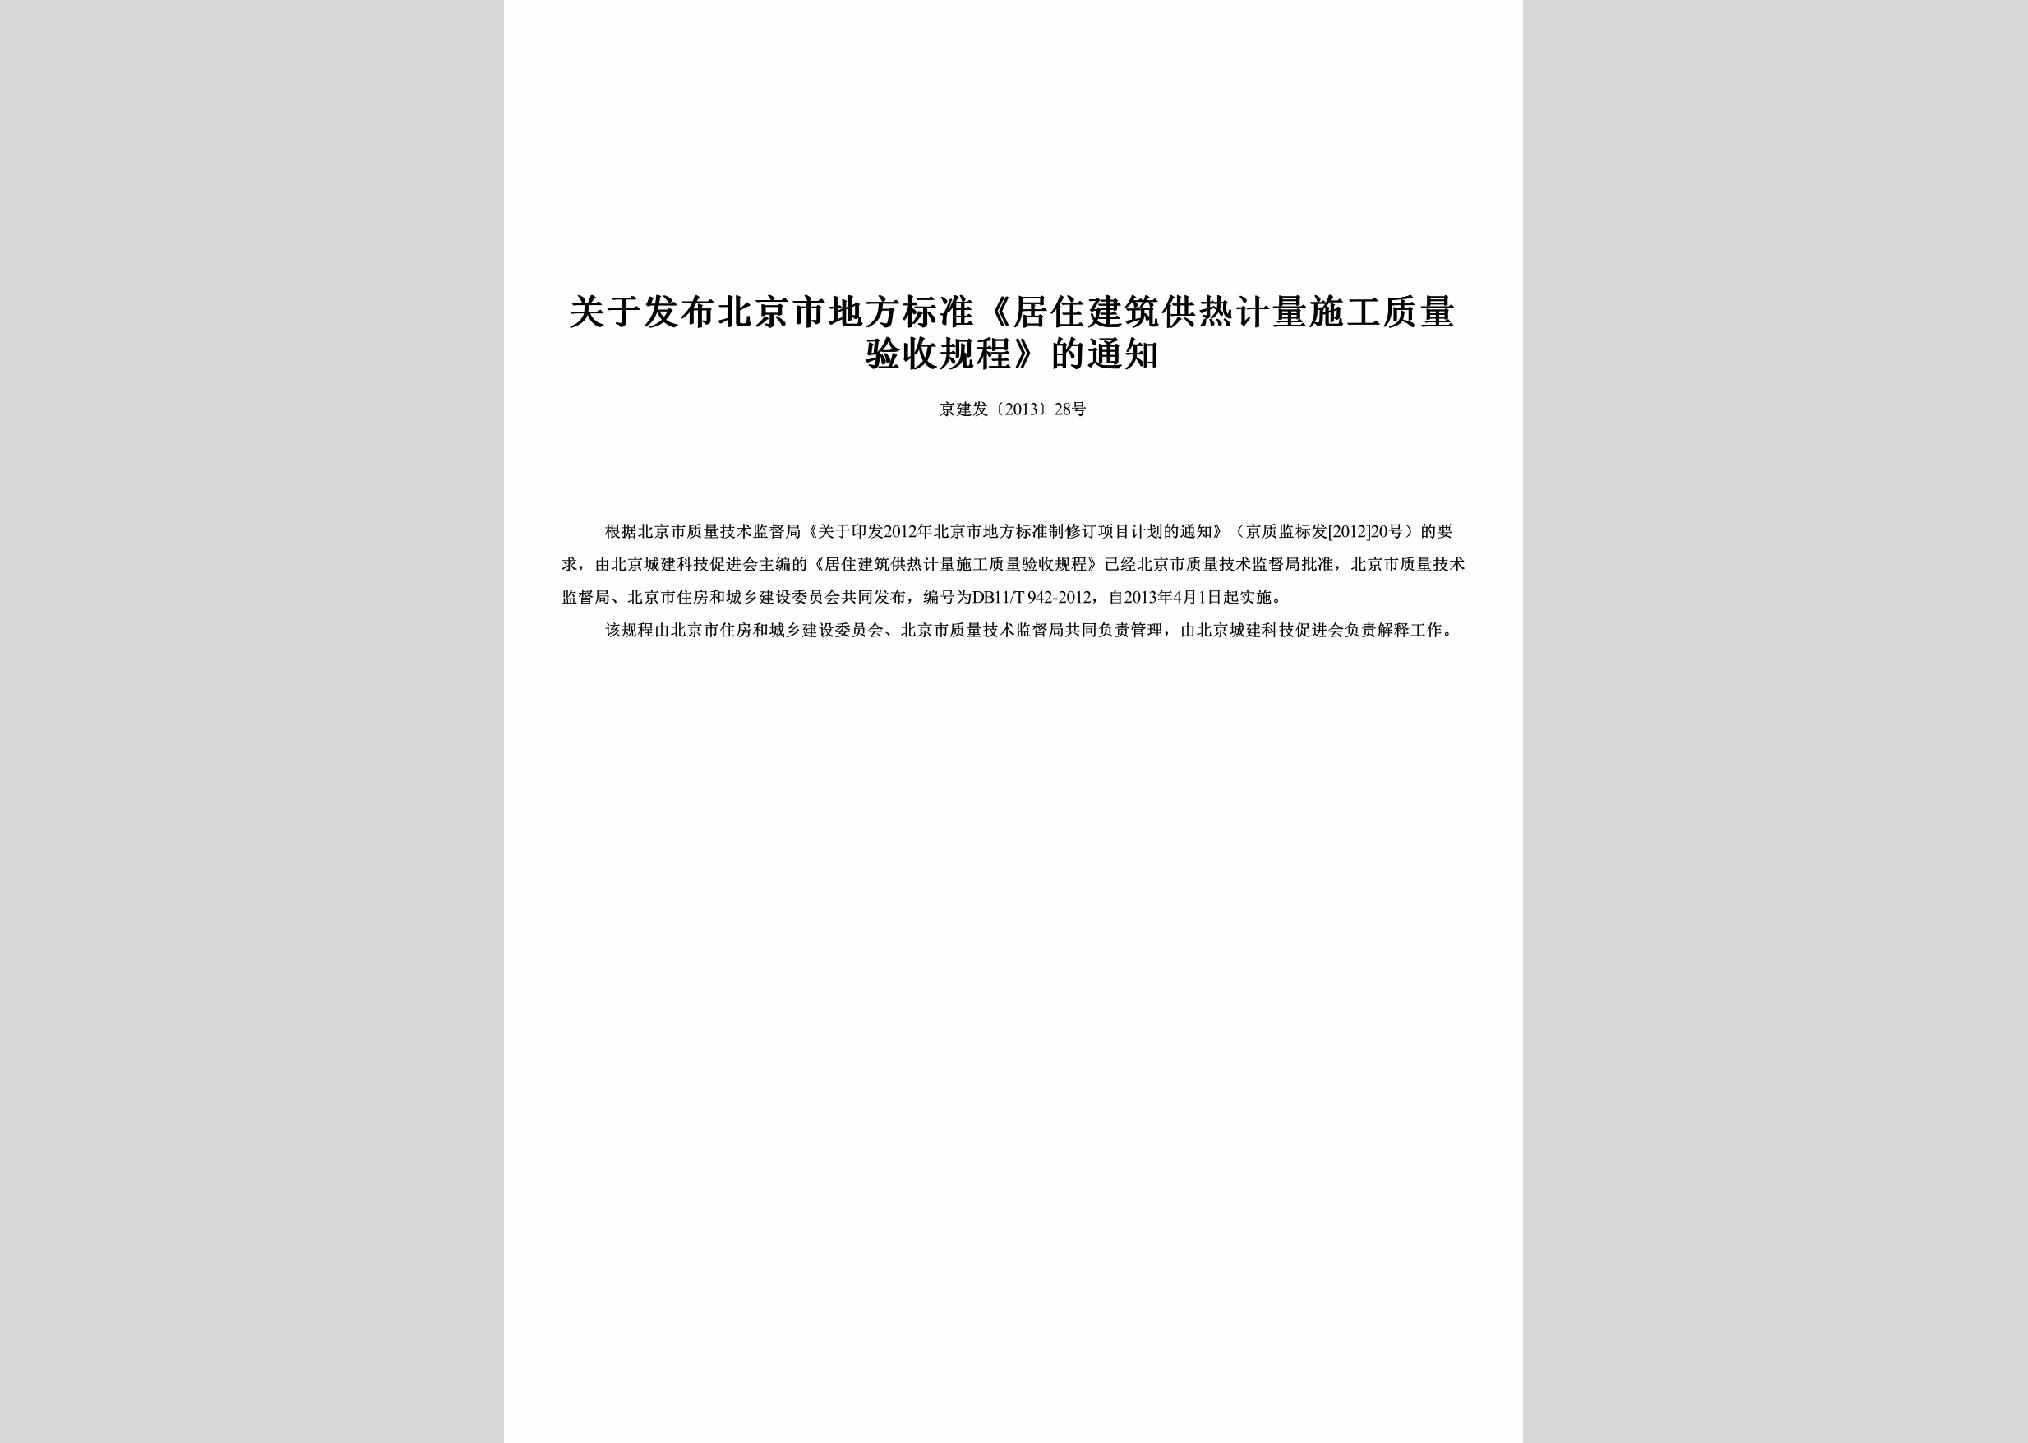 京建发[2013]28号：关于发布北京市地方标准《居住建筑供热计量施工质量验收规程》的通知